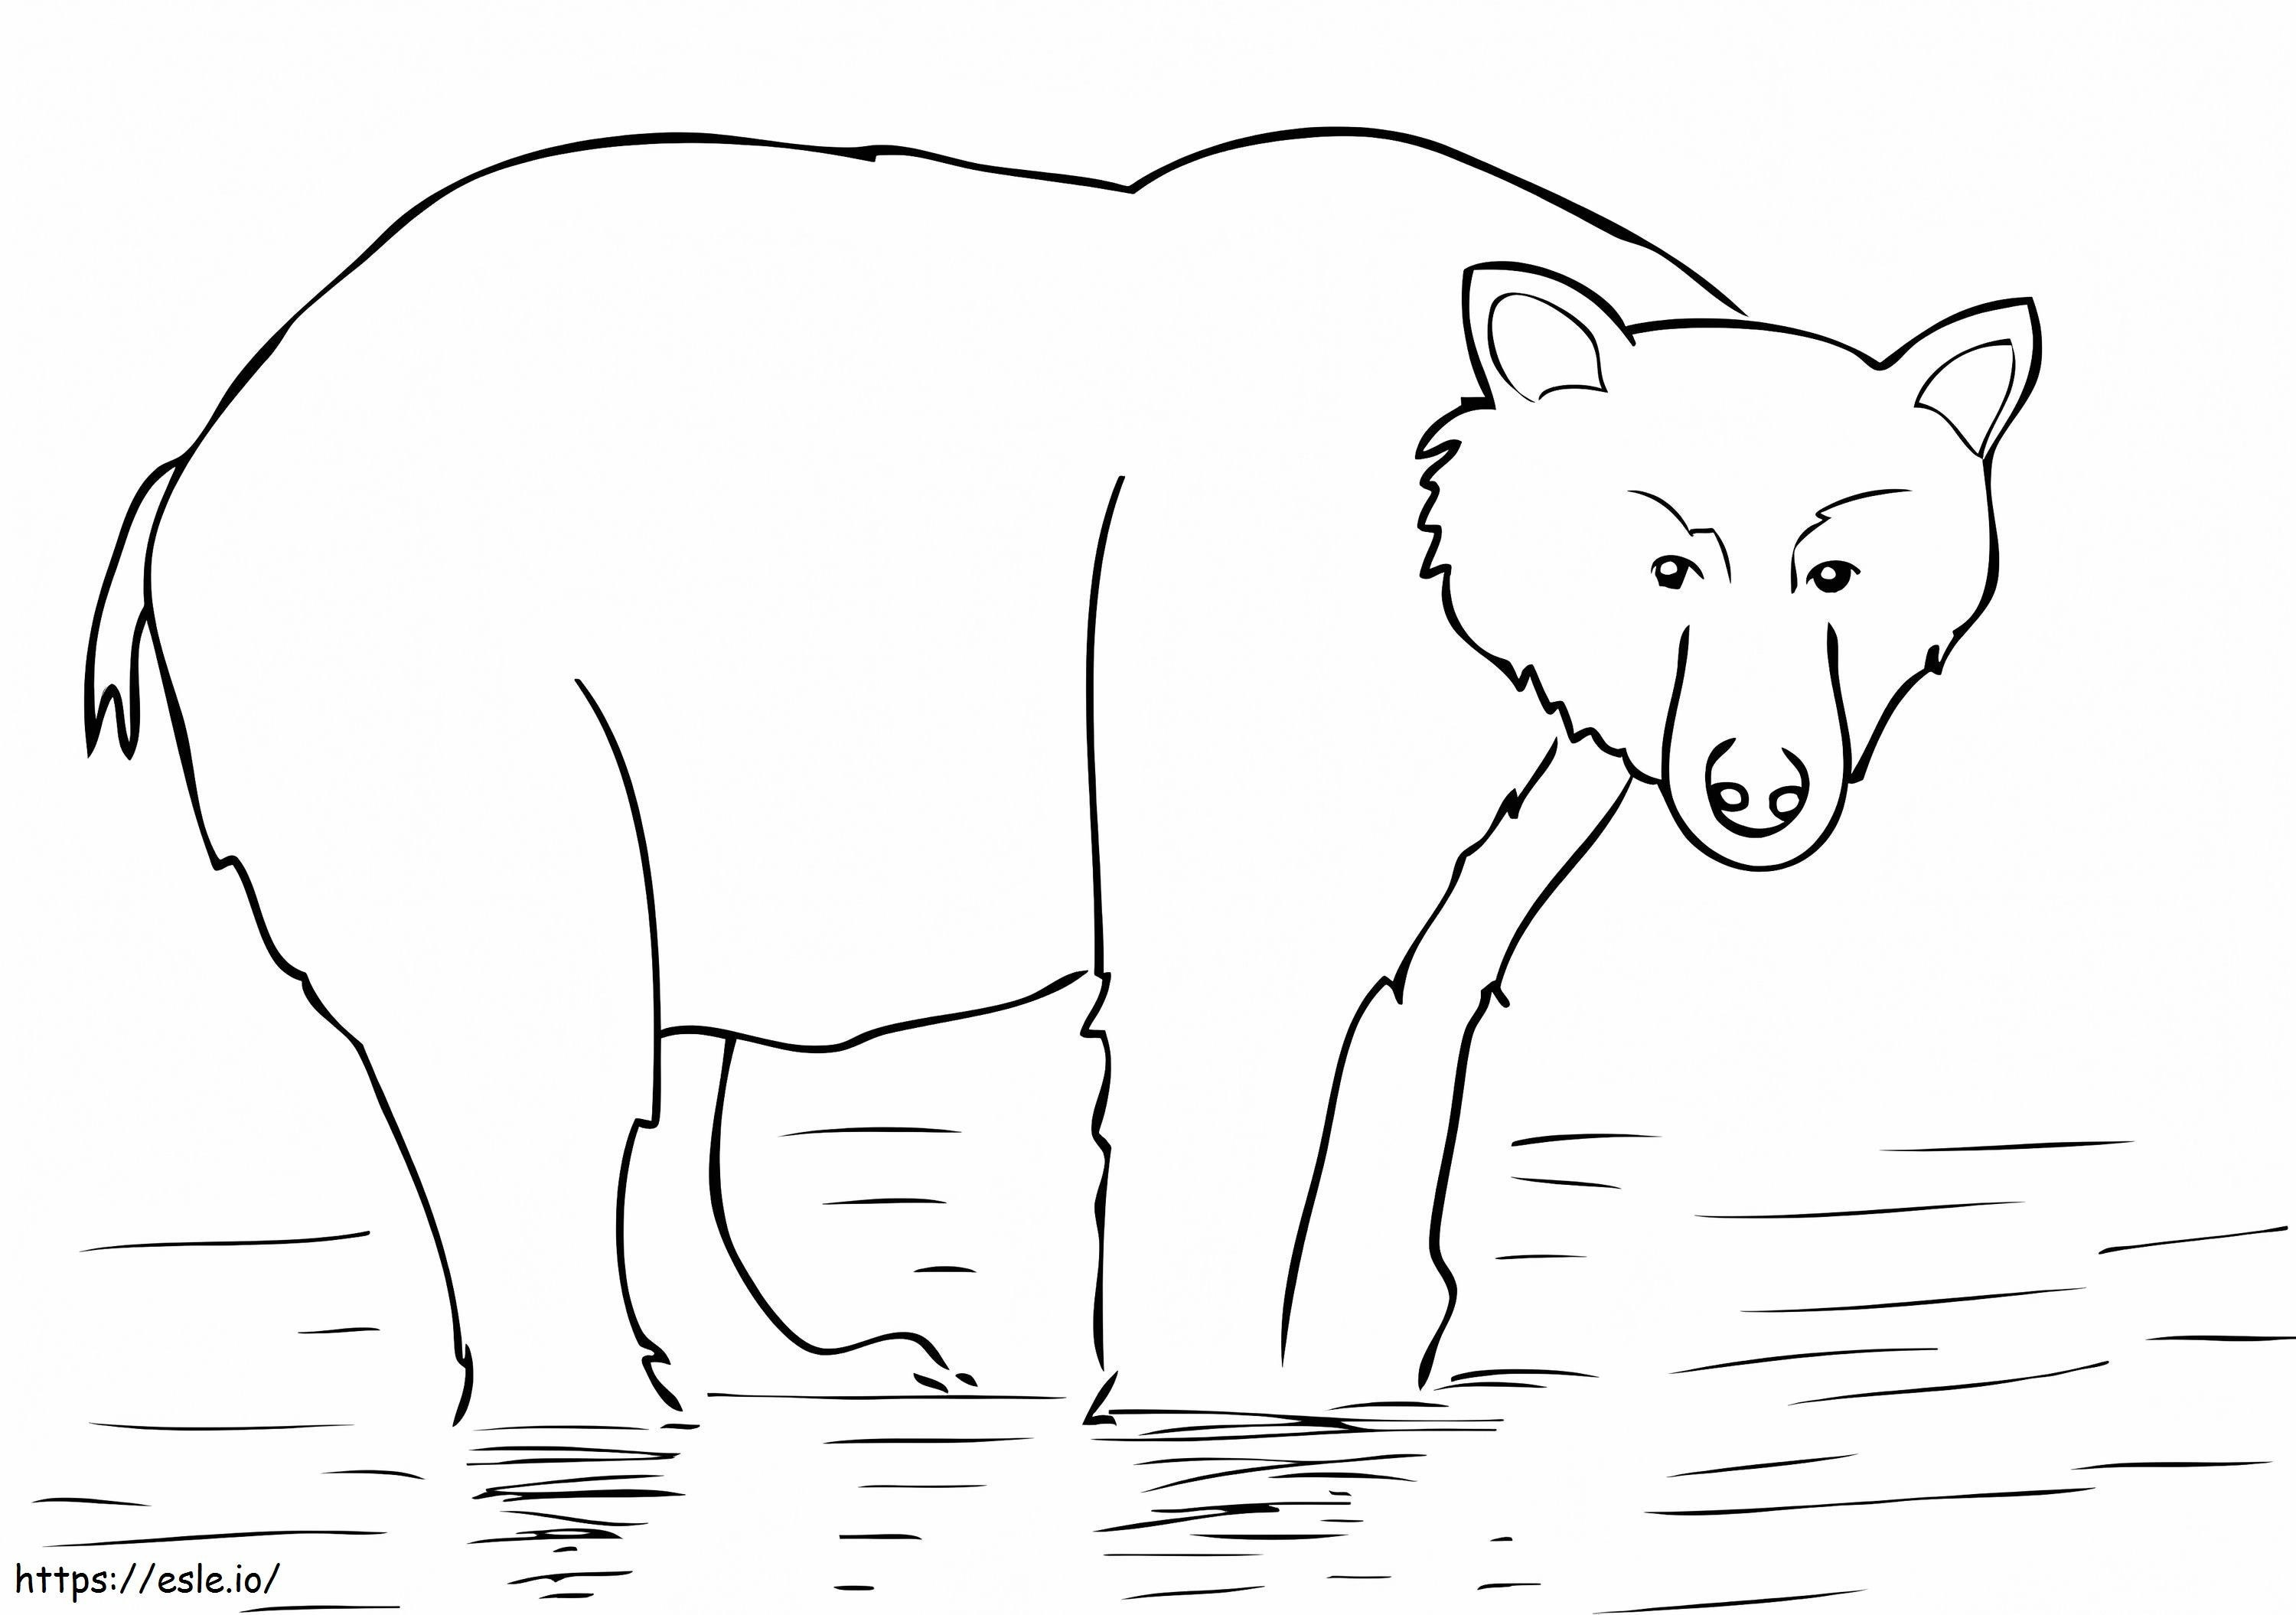 Niedźwiedź brunatny z Alaski kolorowanka